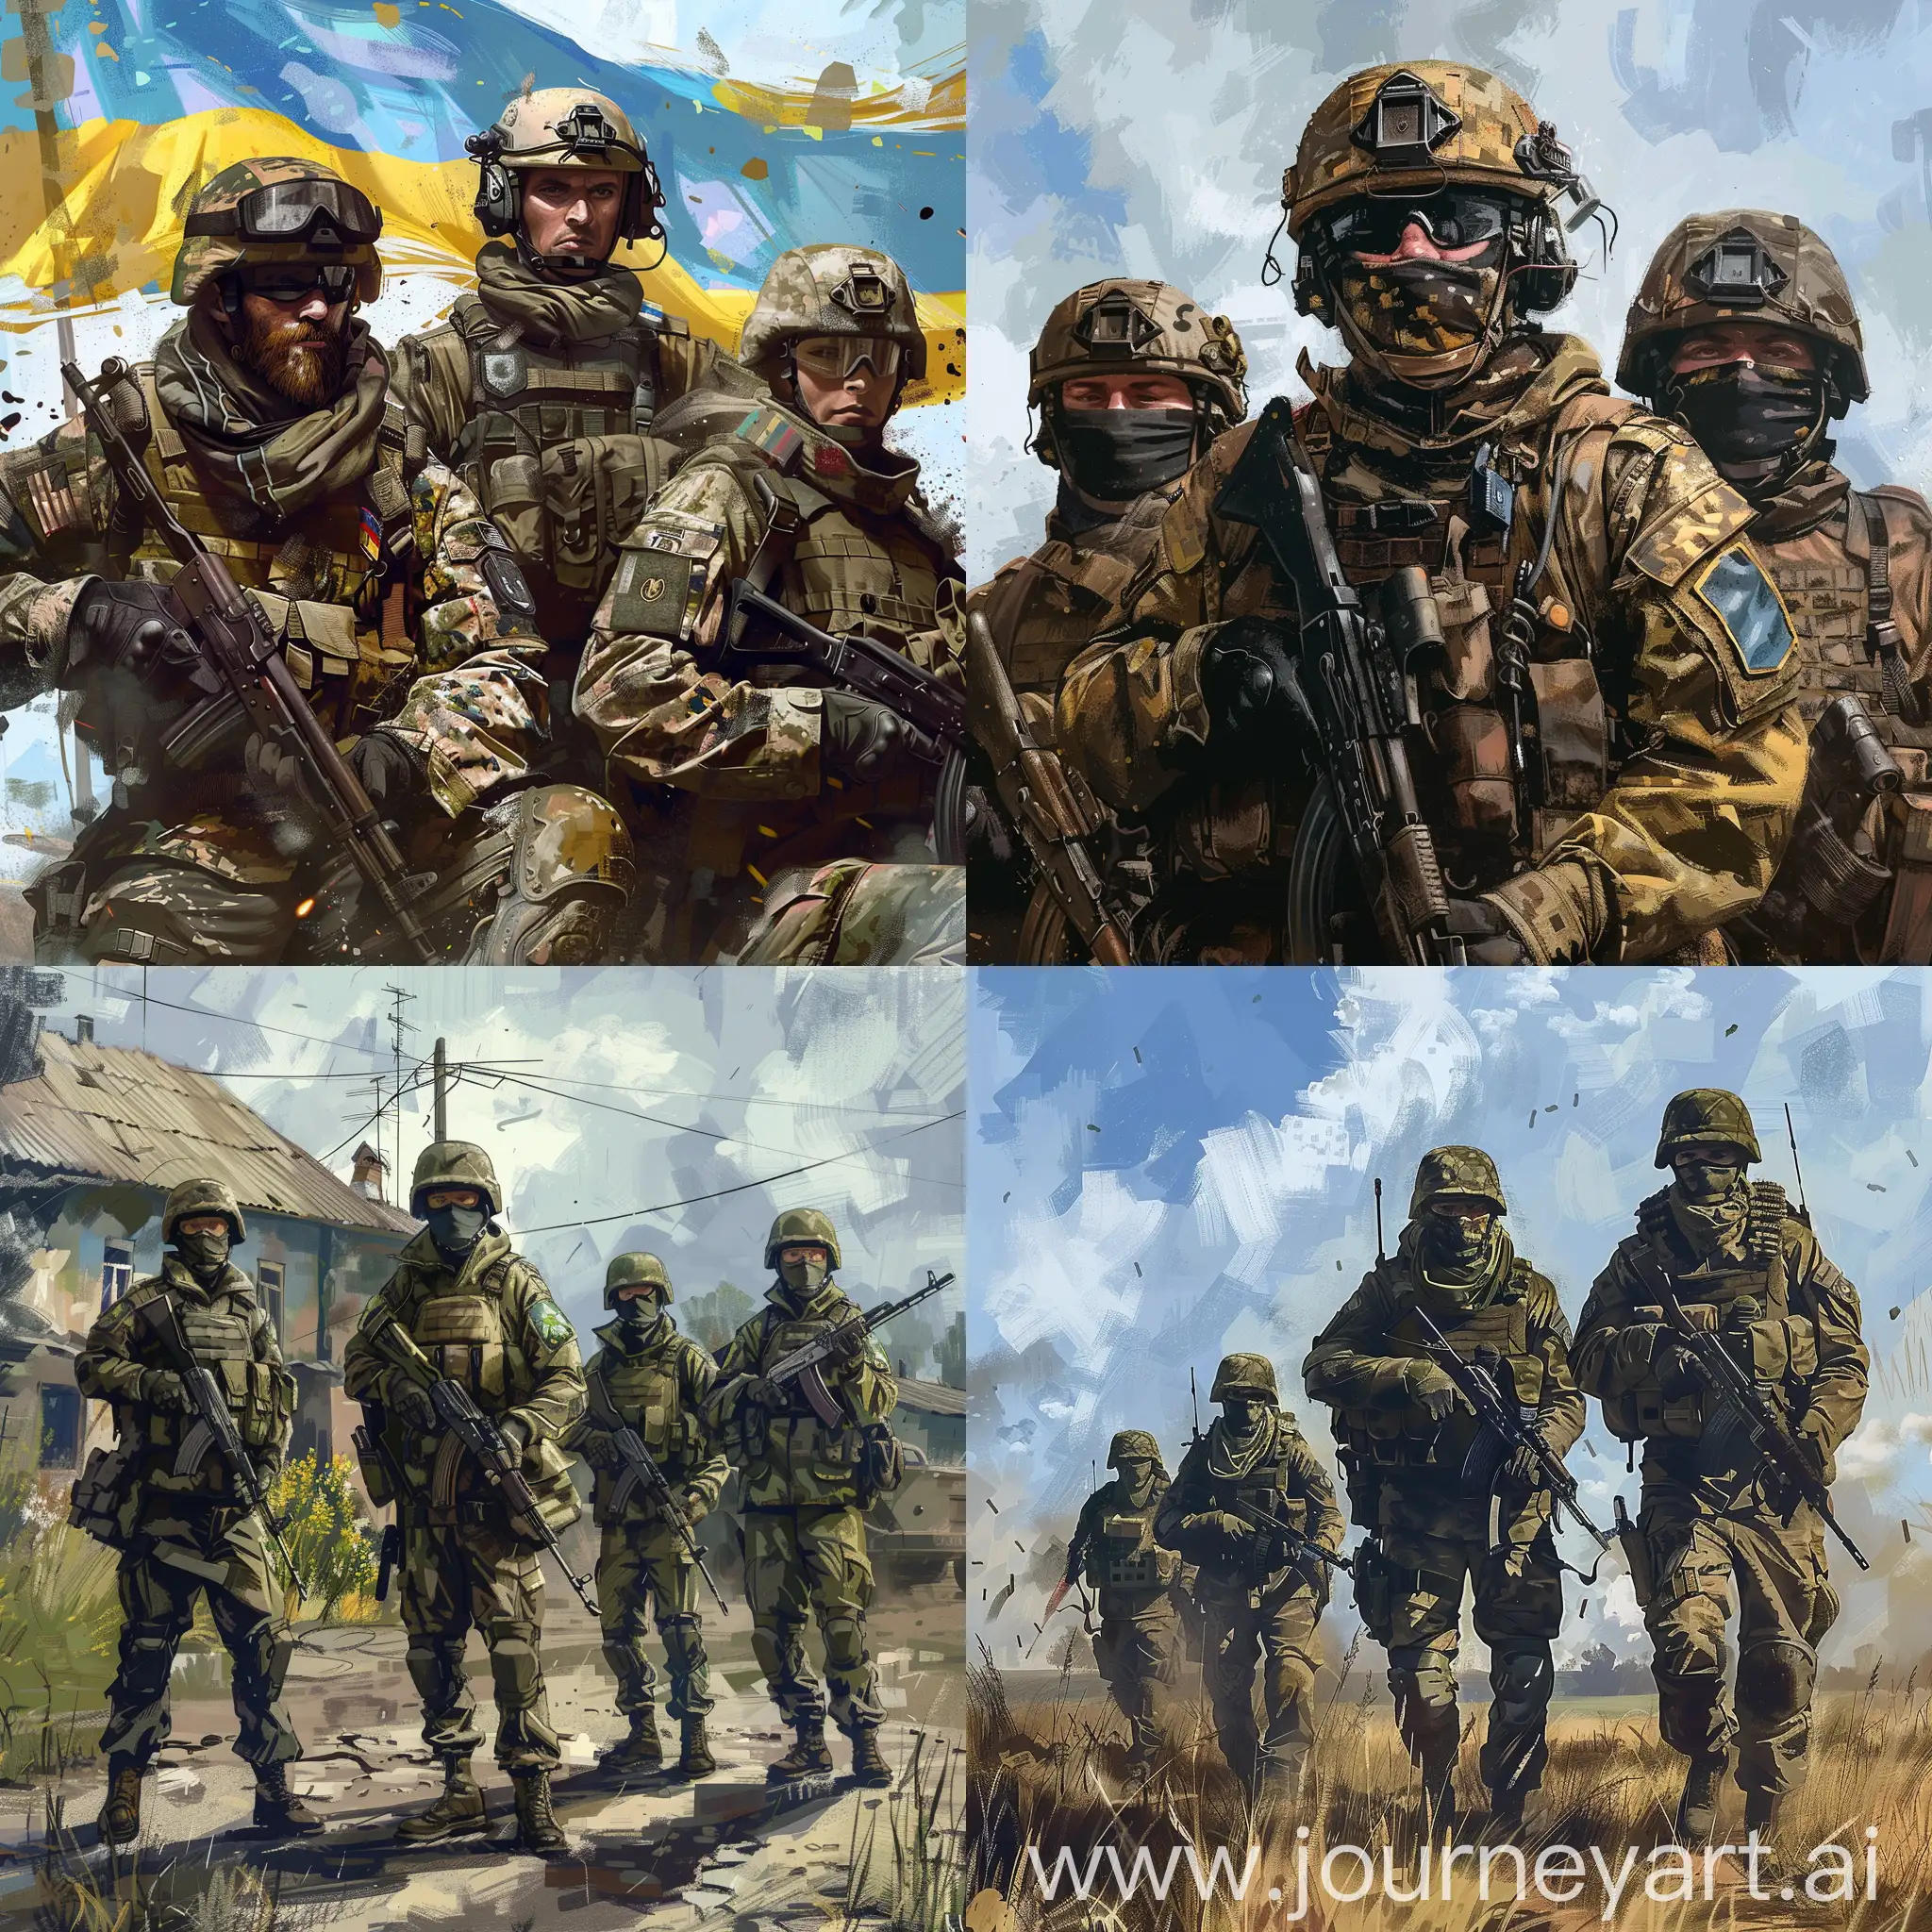 Ukrainian-Soldiers-in-Realistic-GTA-5-Style-Art